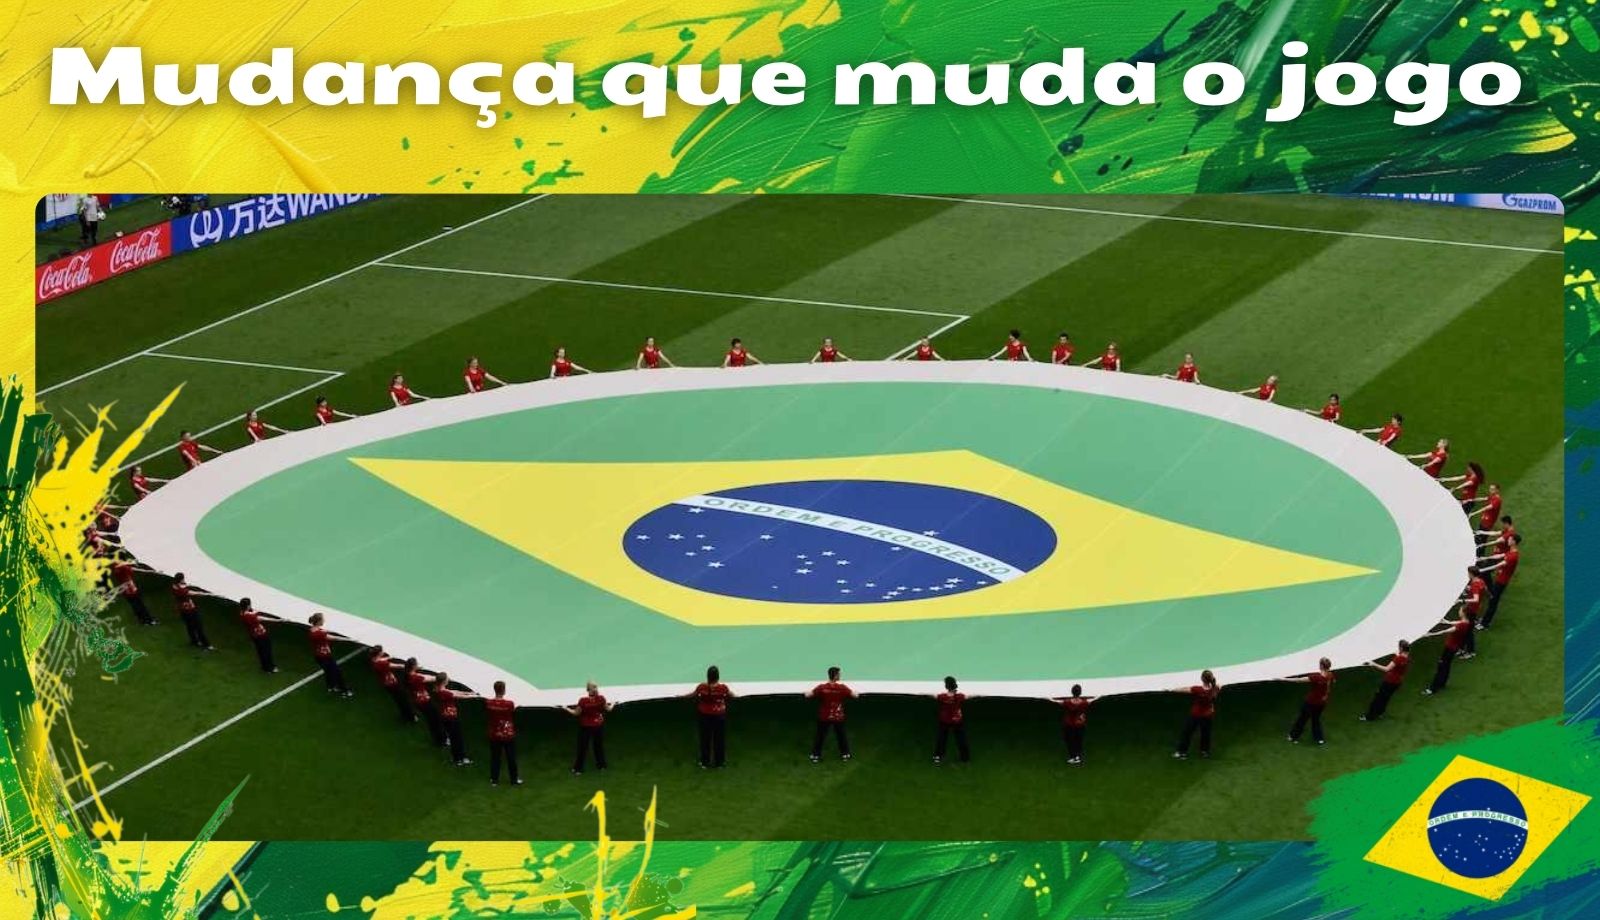 Mudança que muda o jogo Notícias esportivas no Brasil